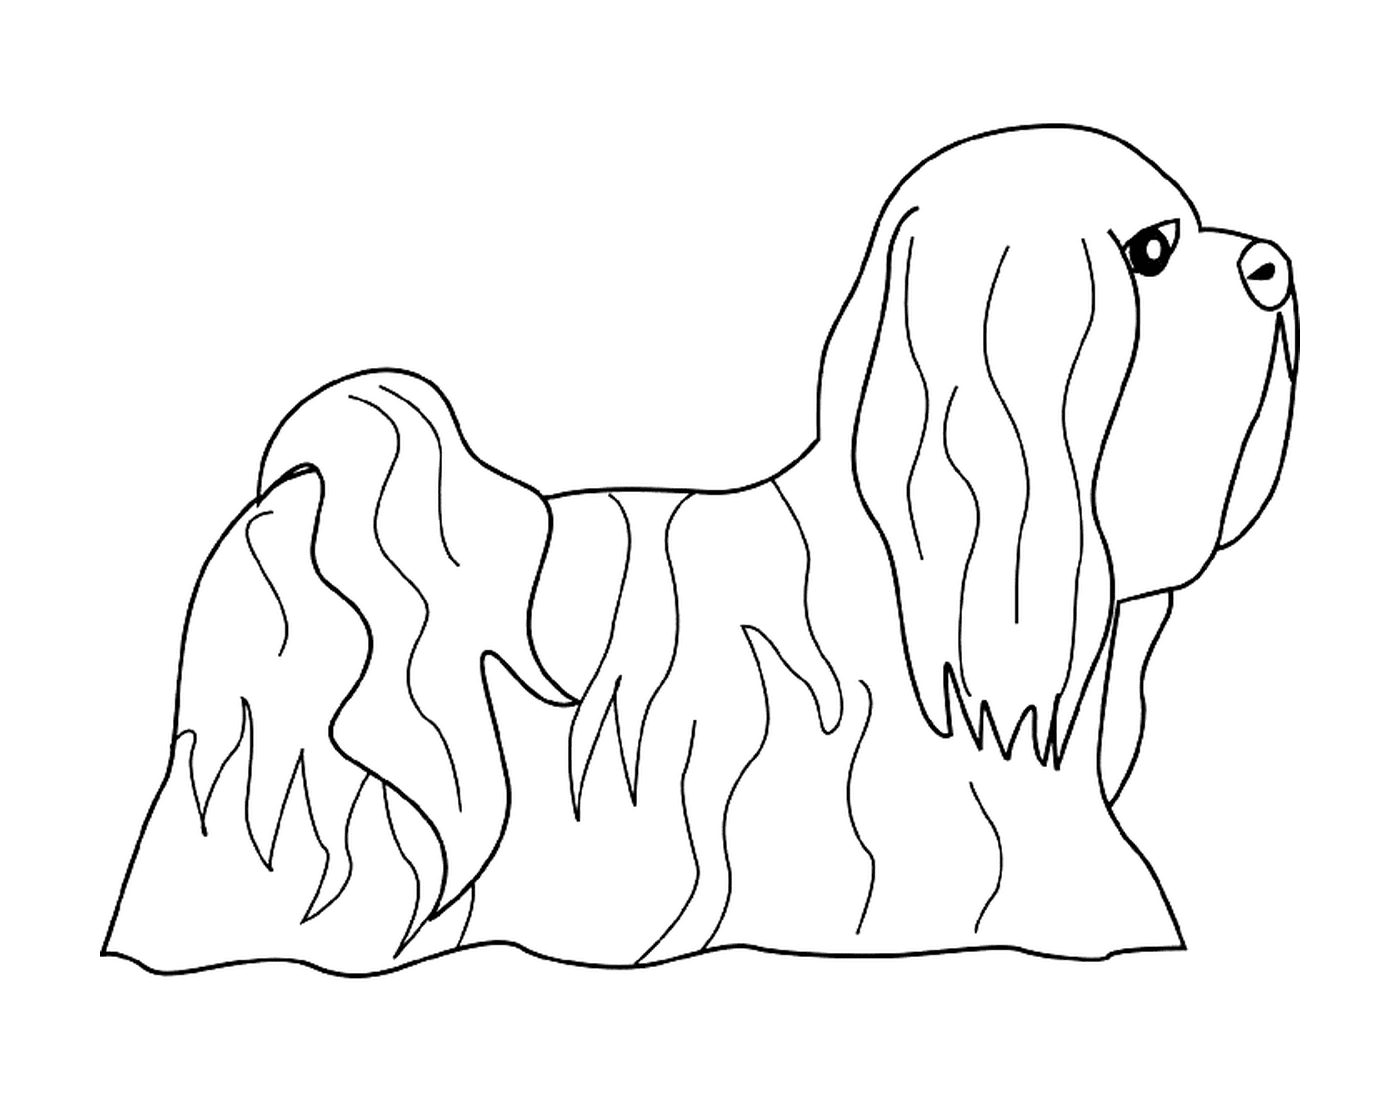  Um cão lhasa apso 